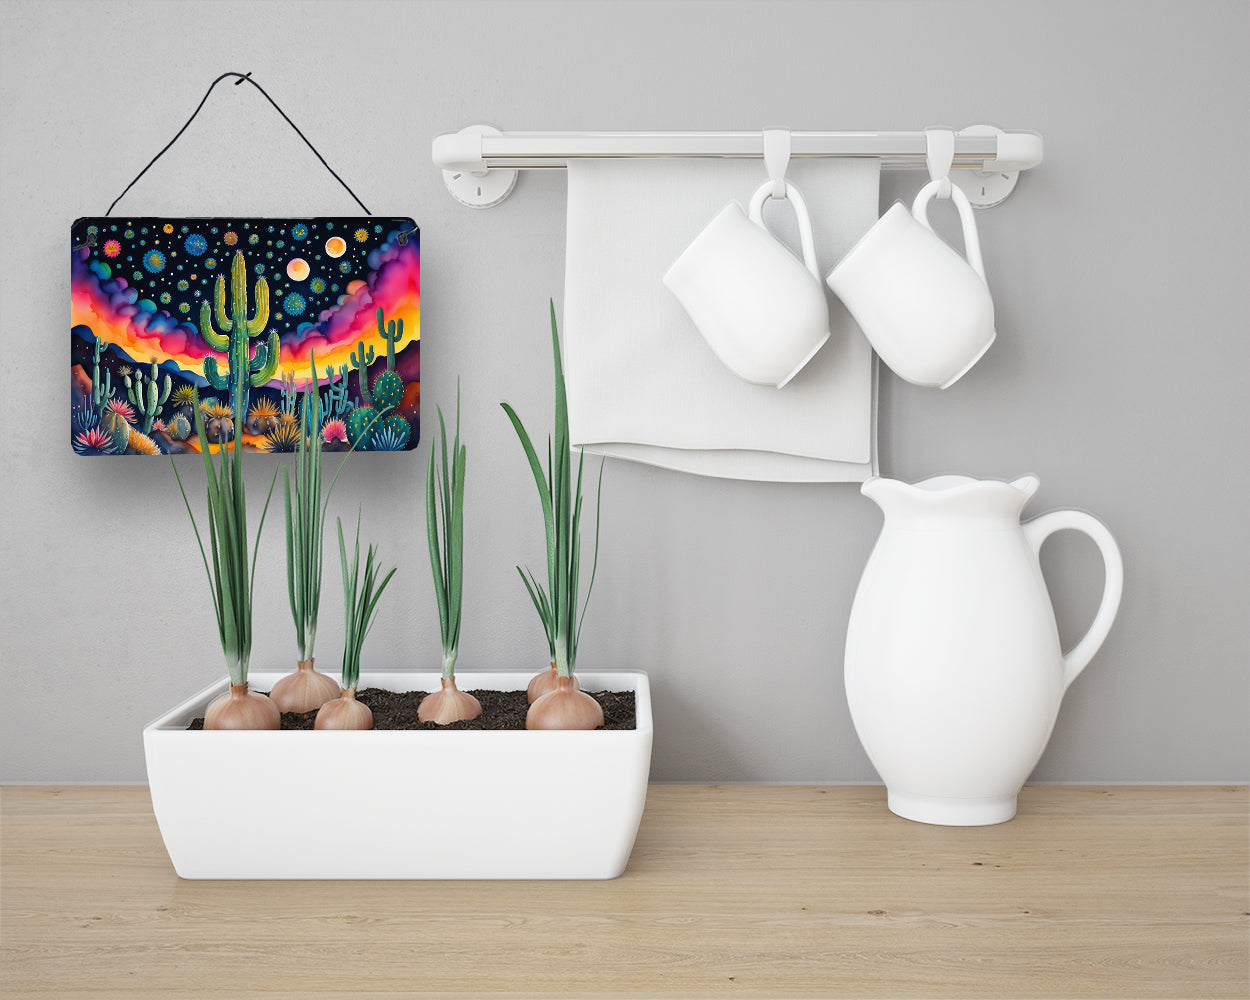 Queen of the Night Cactus in Color Wall or Door Hanging Prints